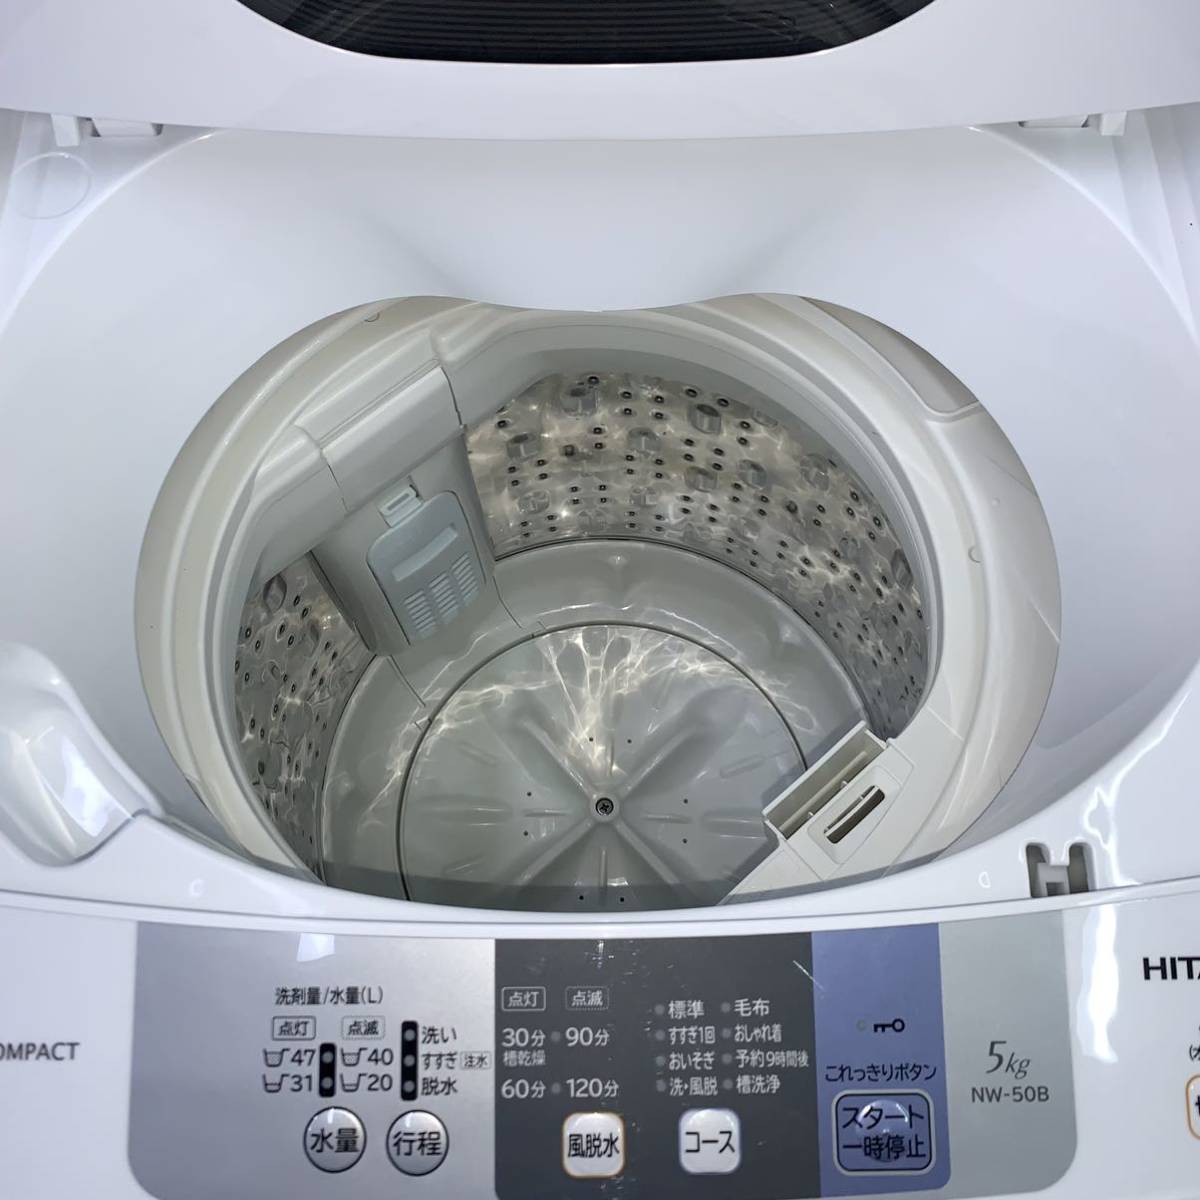 お気に入りの ⭐️HITACHI⭐️全自動洗濯機 2020年5kg 大阪市近郊配送 